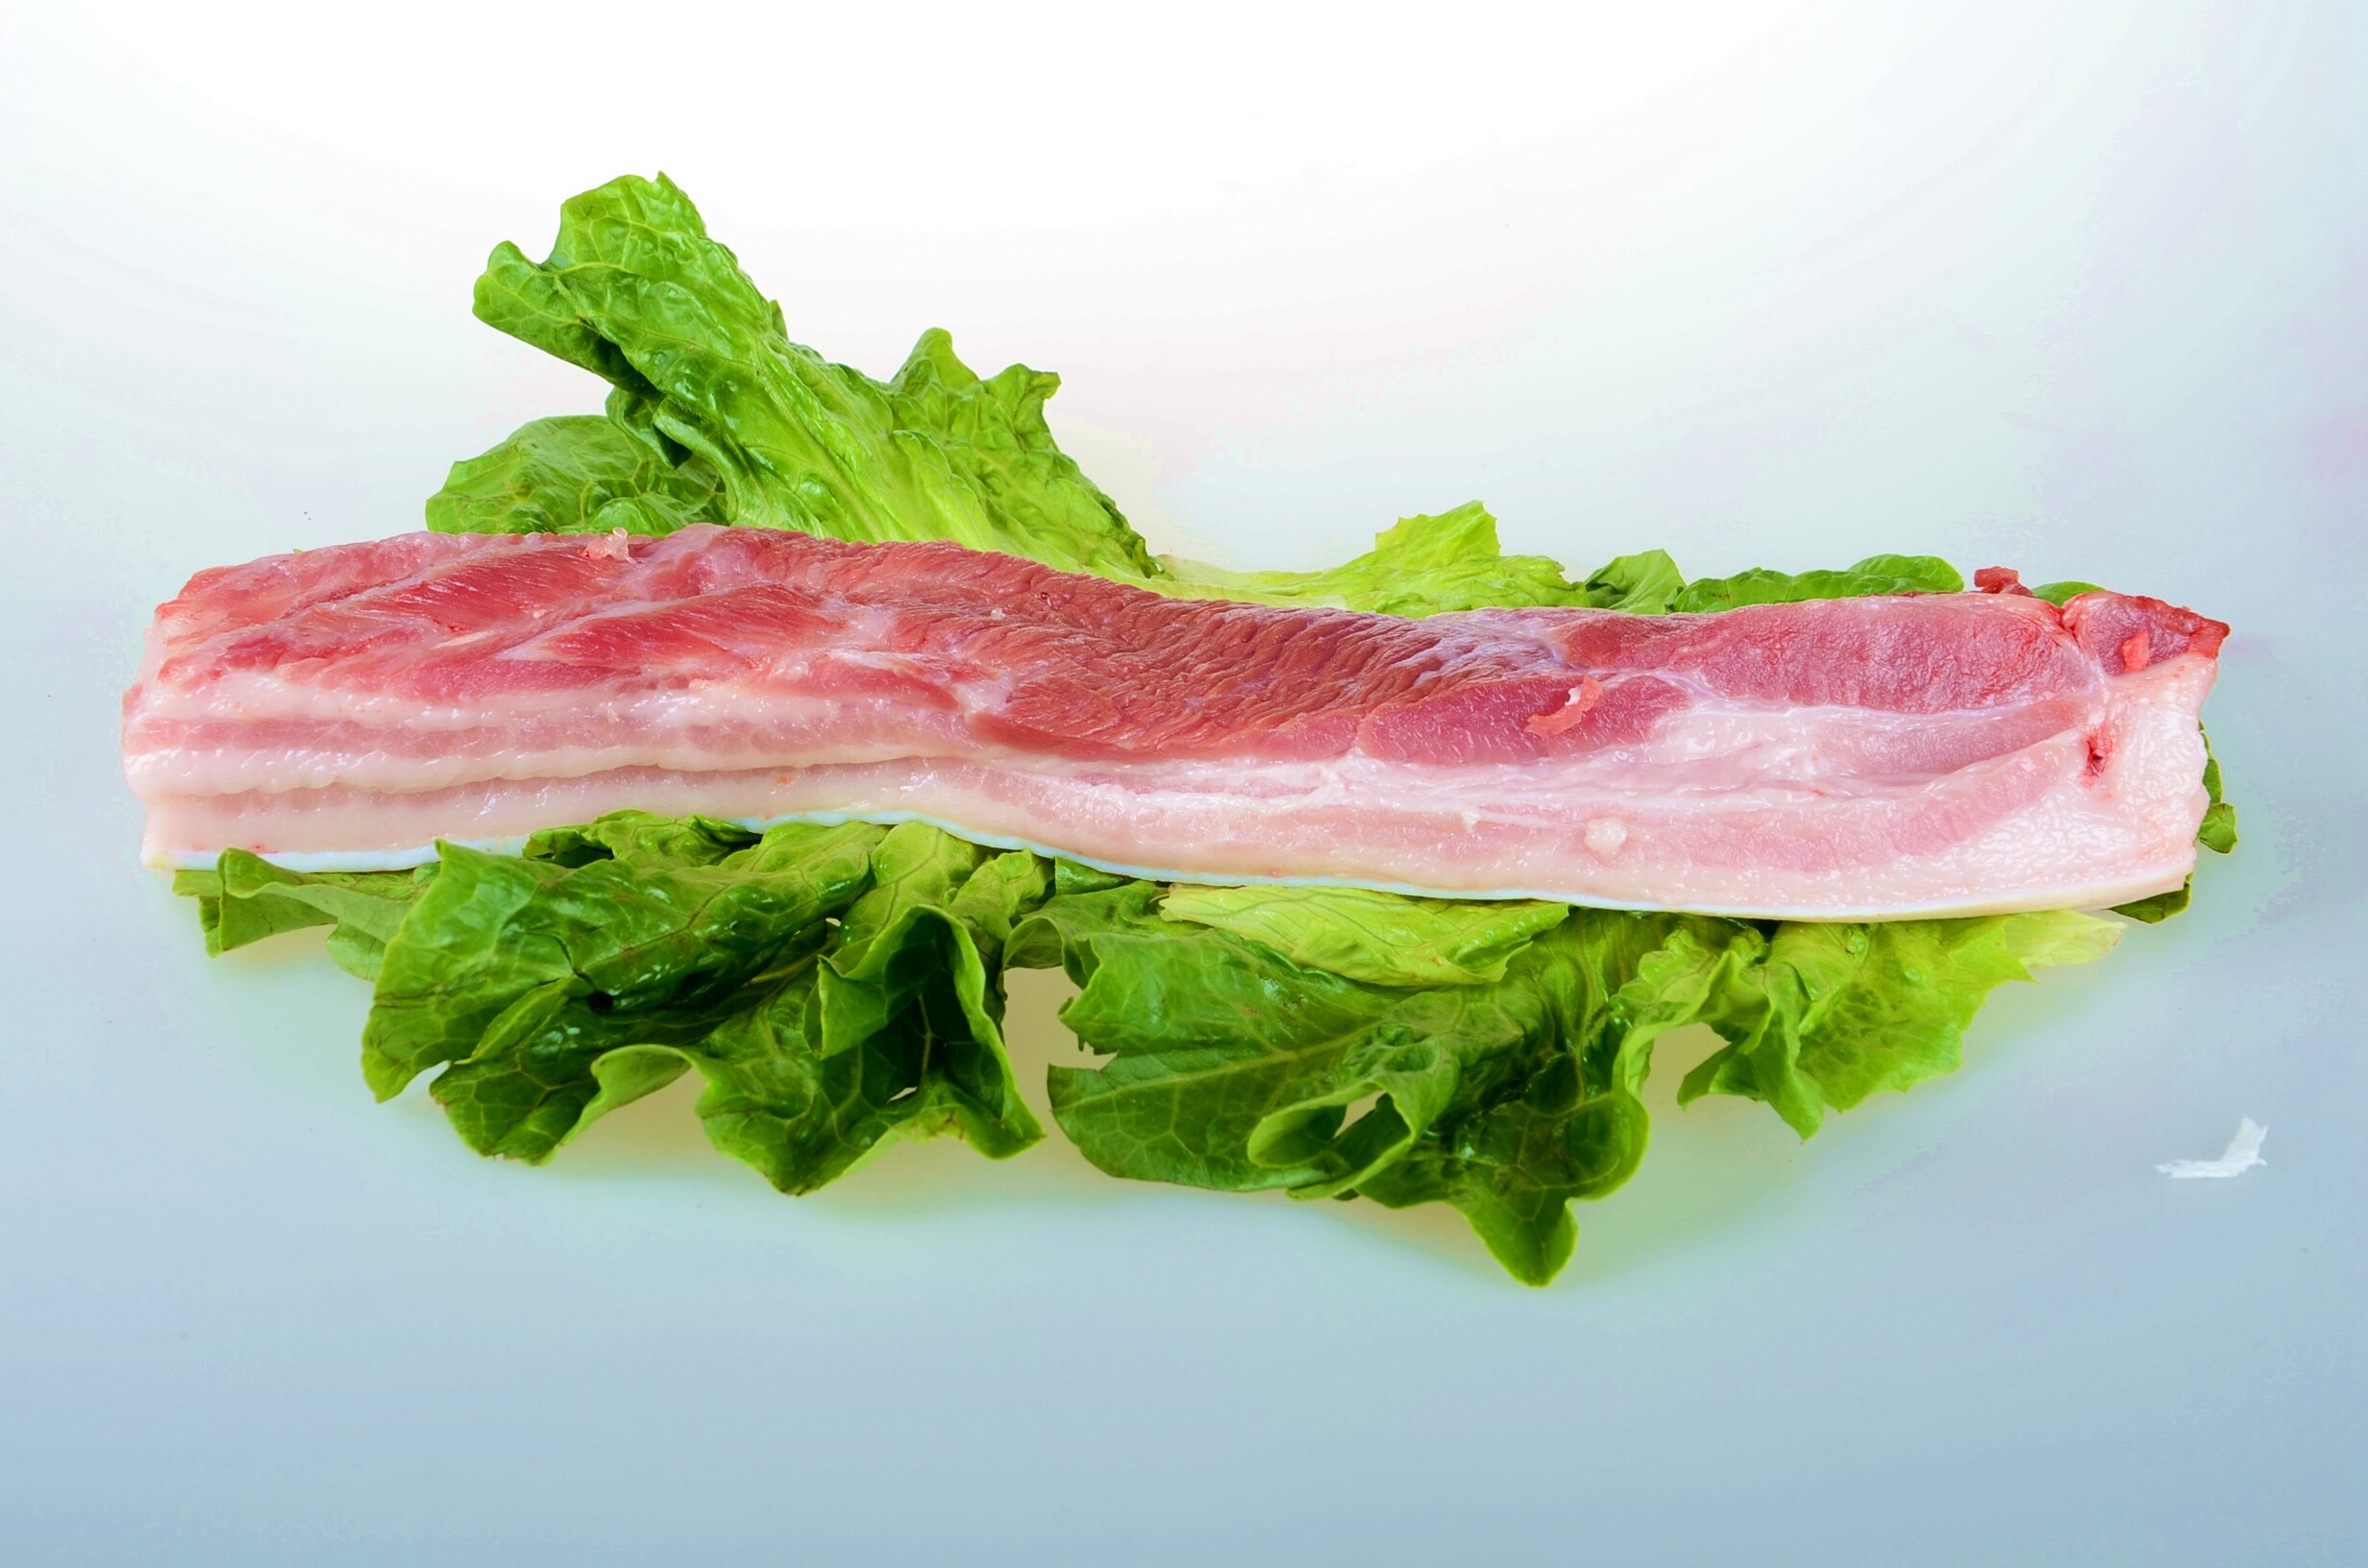 蝦醬乾煎豬腩肉食譜、做法 | Elaine袁太廚房的Cook1Cook食譜分享